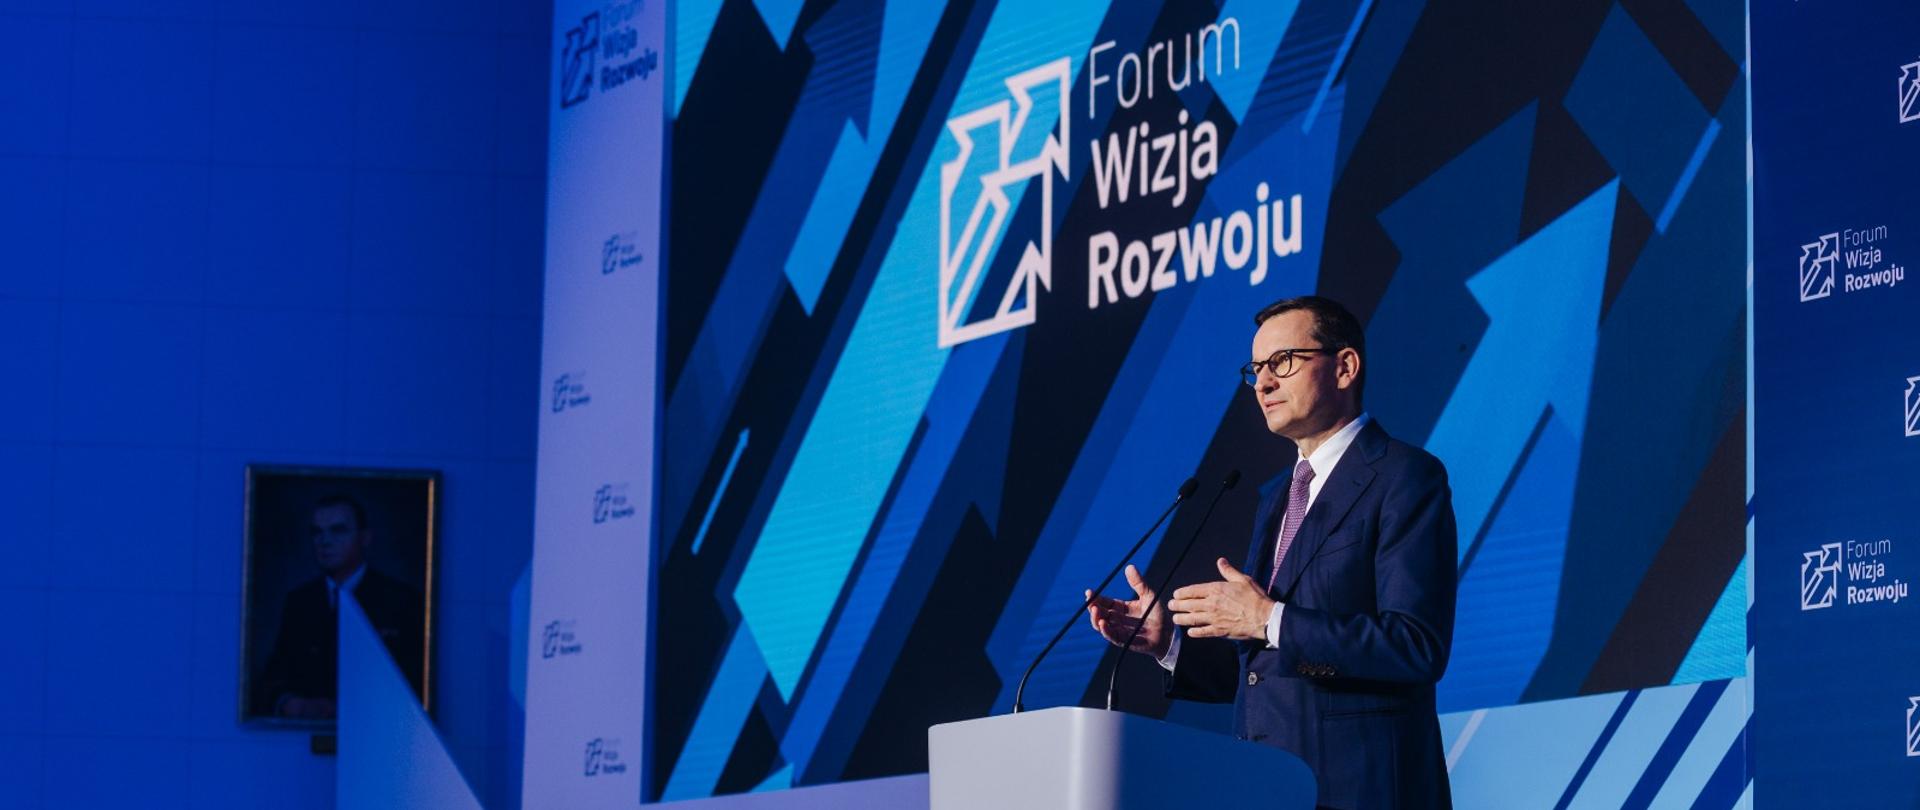 Premier Mateusz Morawiecki przemawia podczas Forum Wizja Rozwoju w Gdyni.